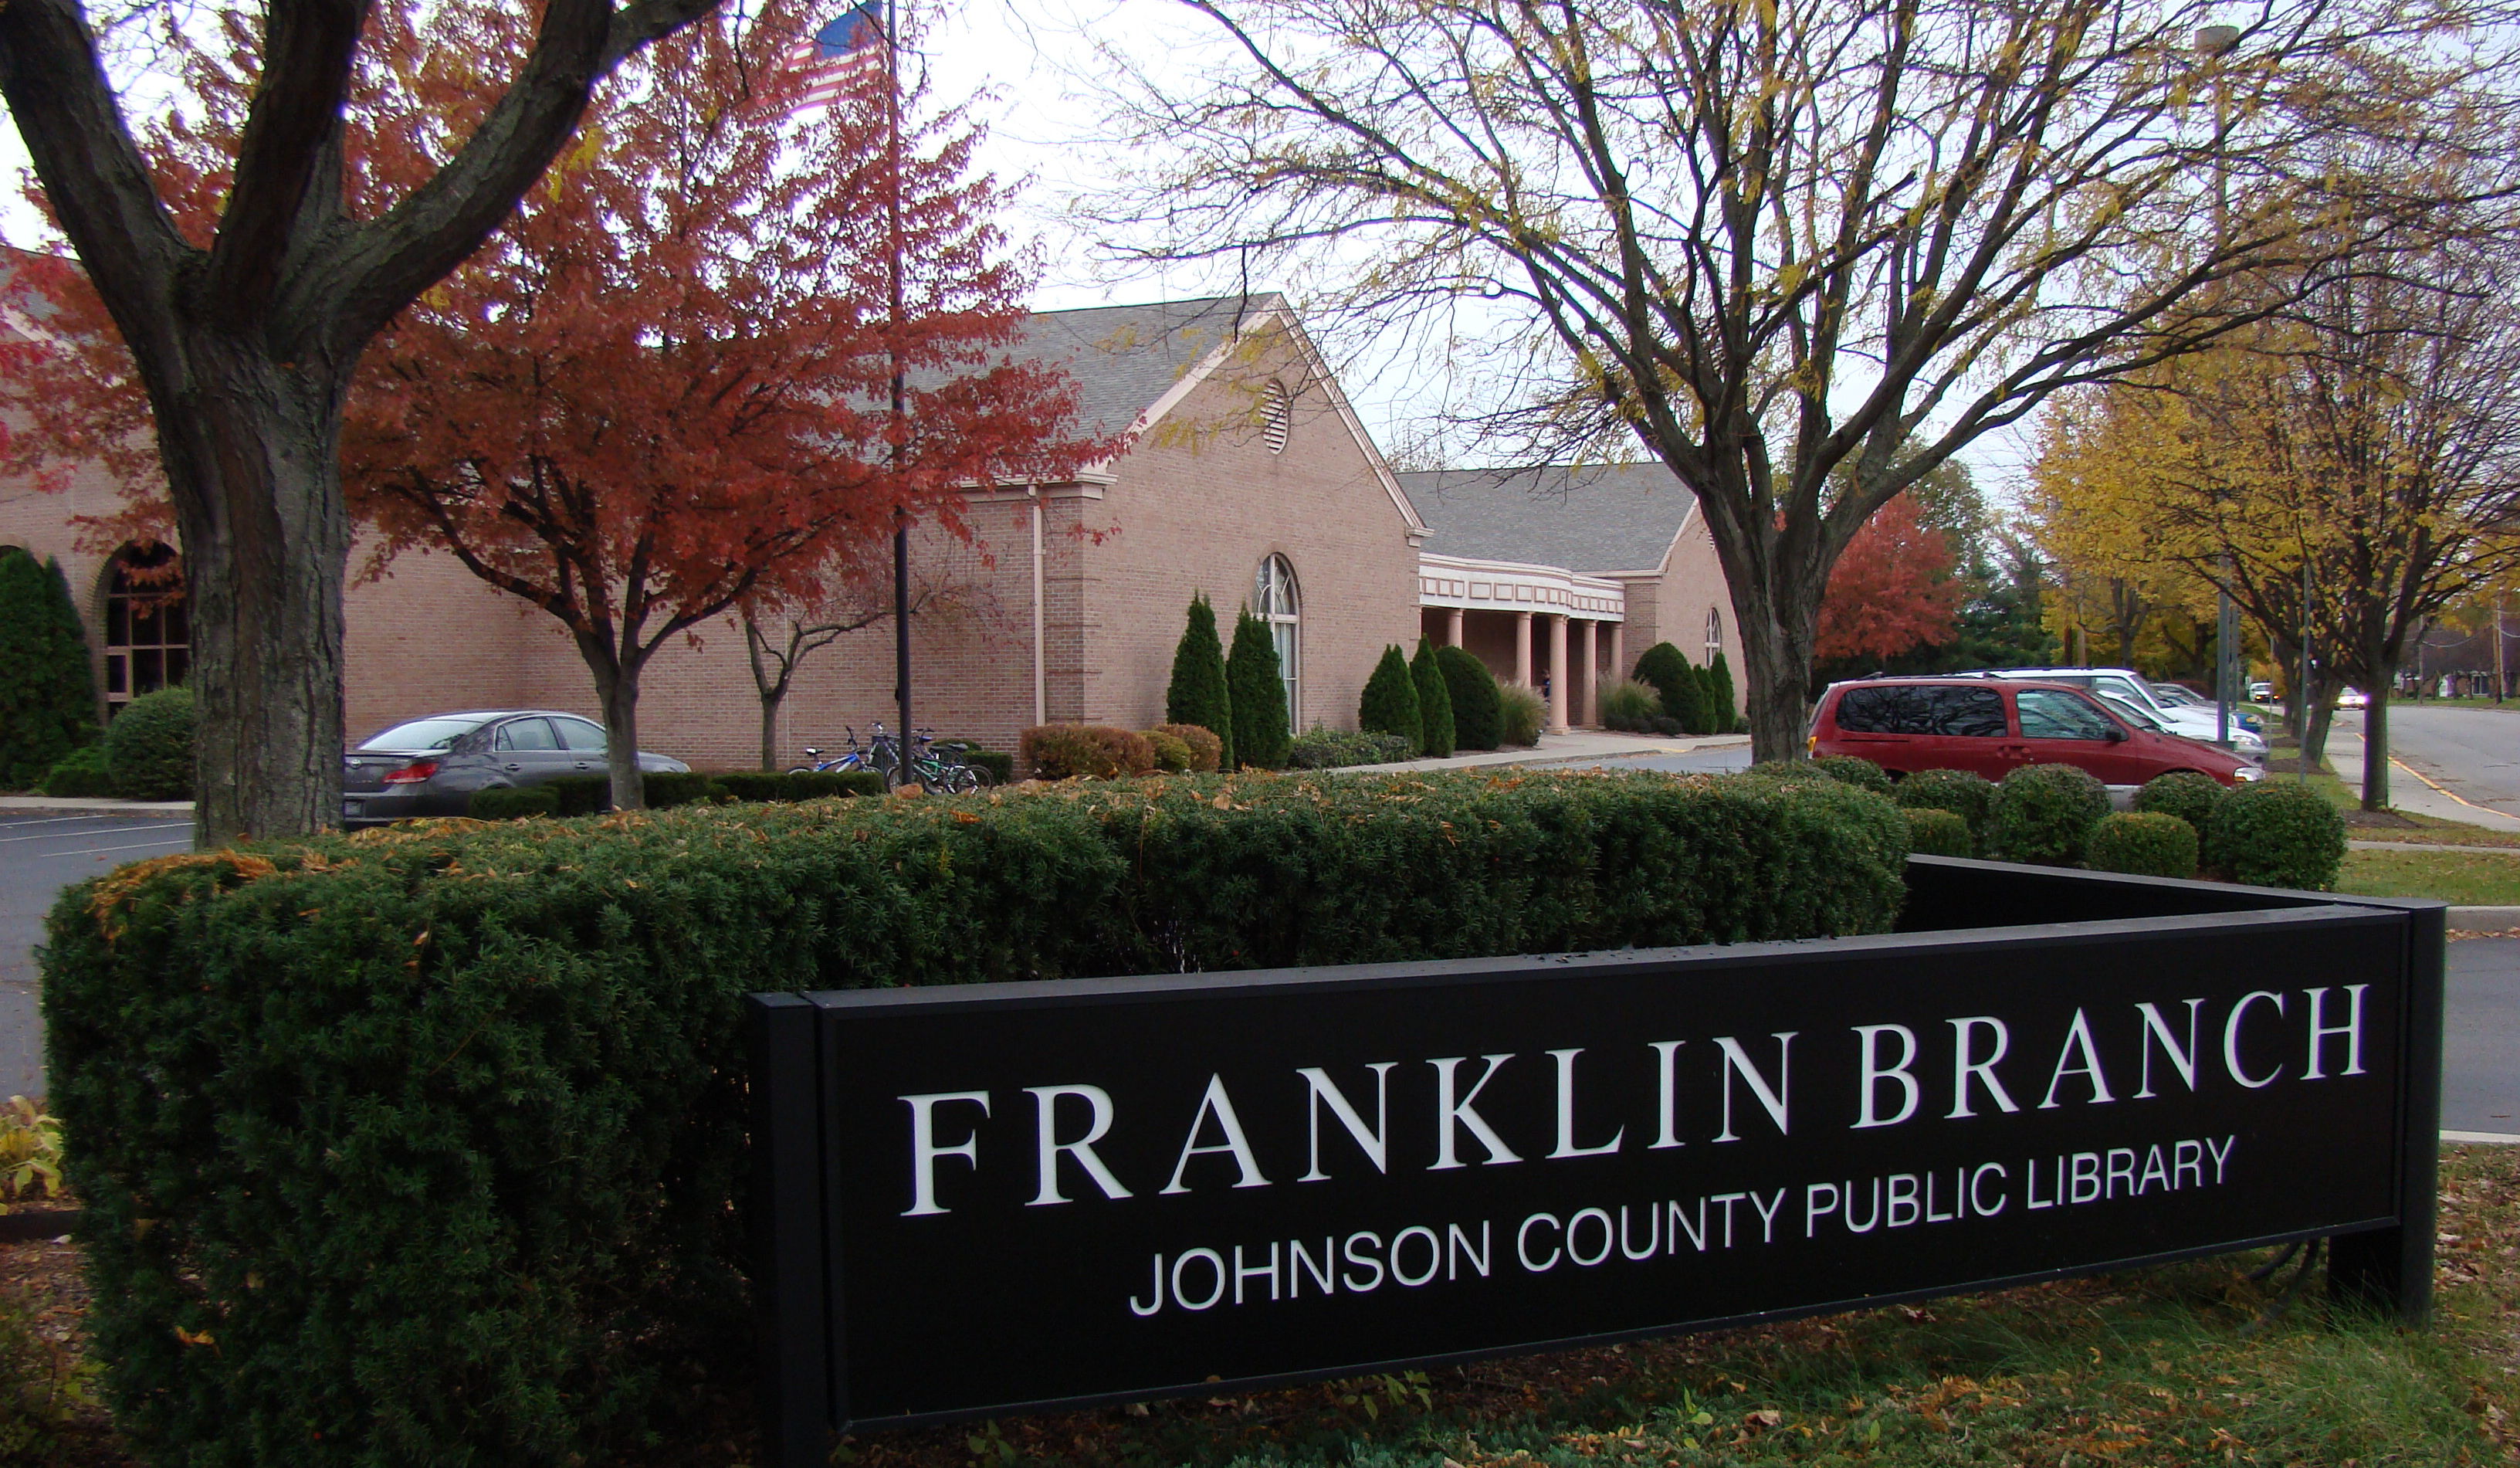 Franklin Branch